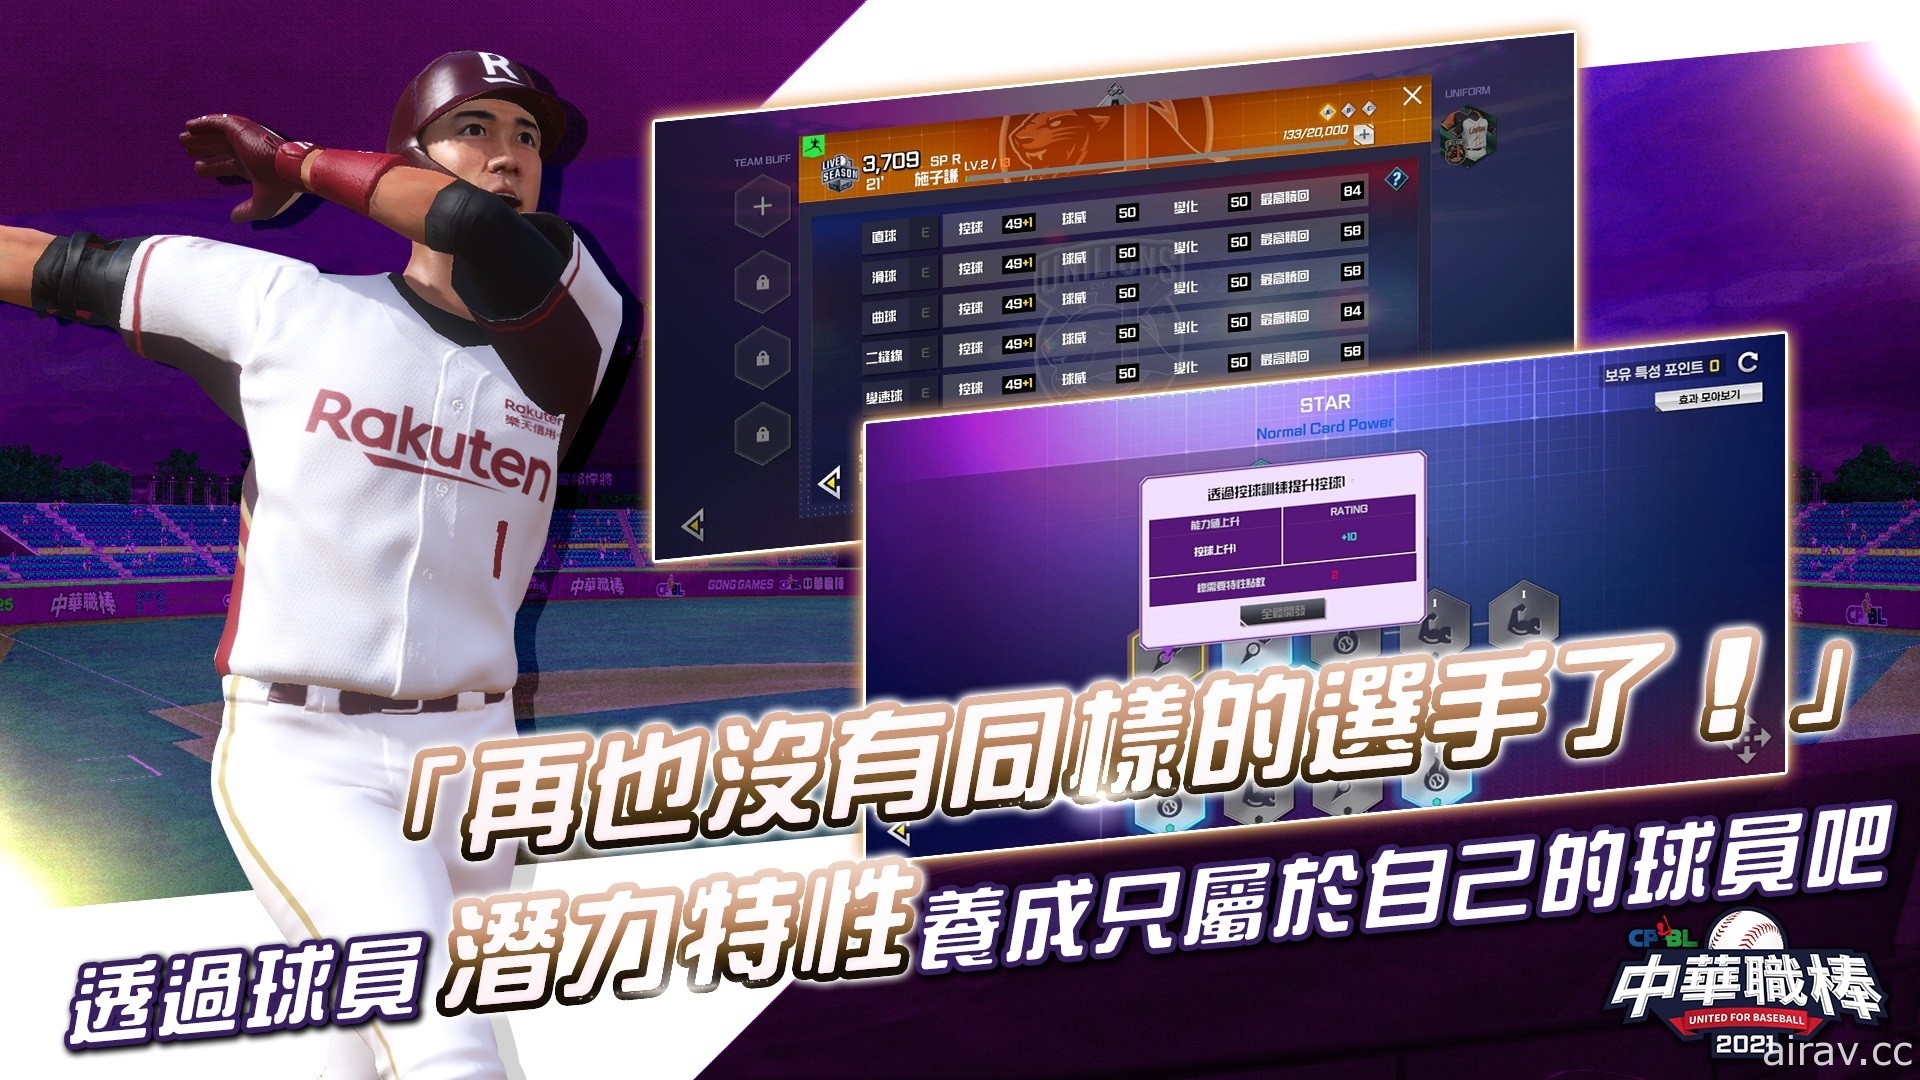 擬真棒球遊戲《CPBL 中華職棒 2021》雙平台上市 以動態捕捉技術重現真實球賽